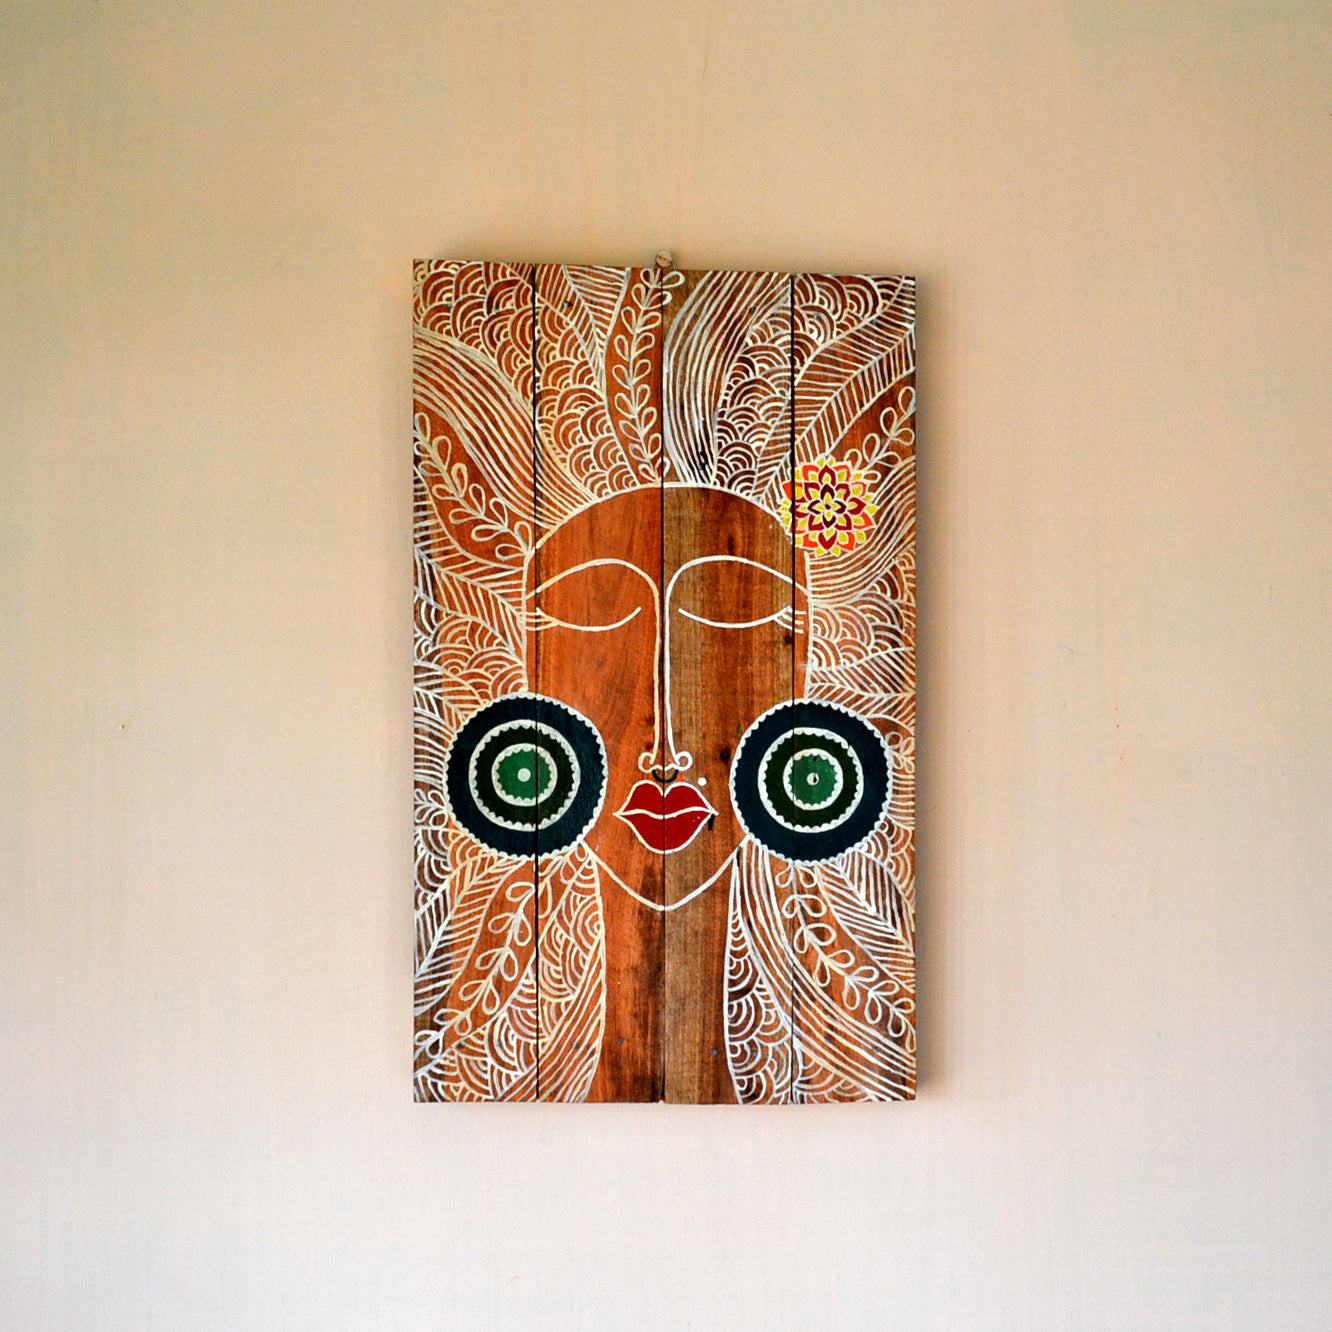 Chinhhari arts wooden hand painted wall decor - WWD007 - Chinhhari Arts store